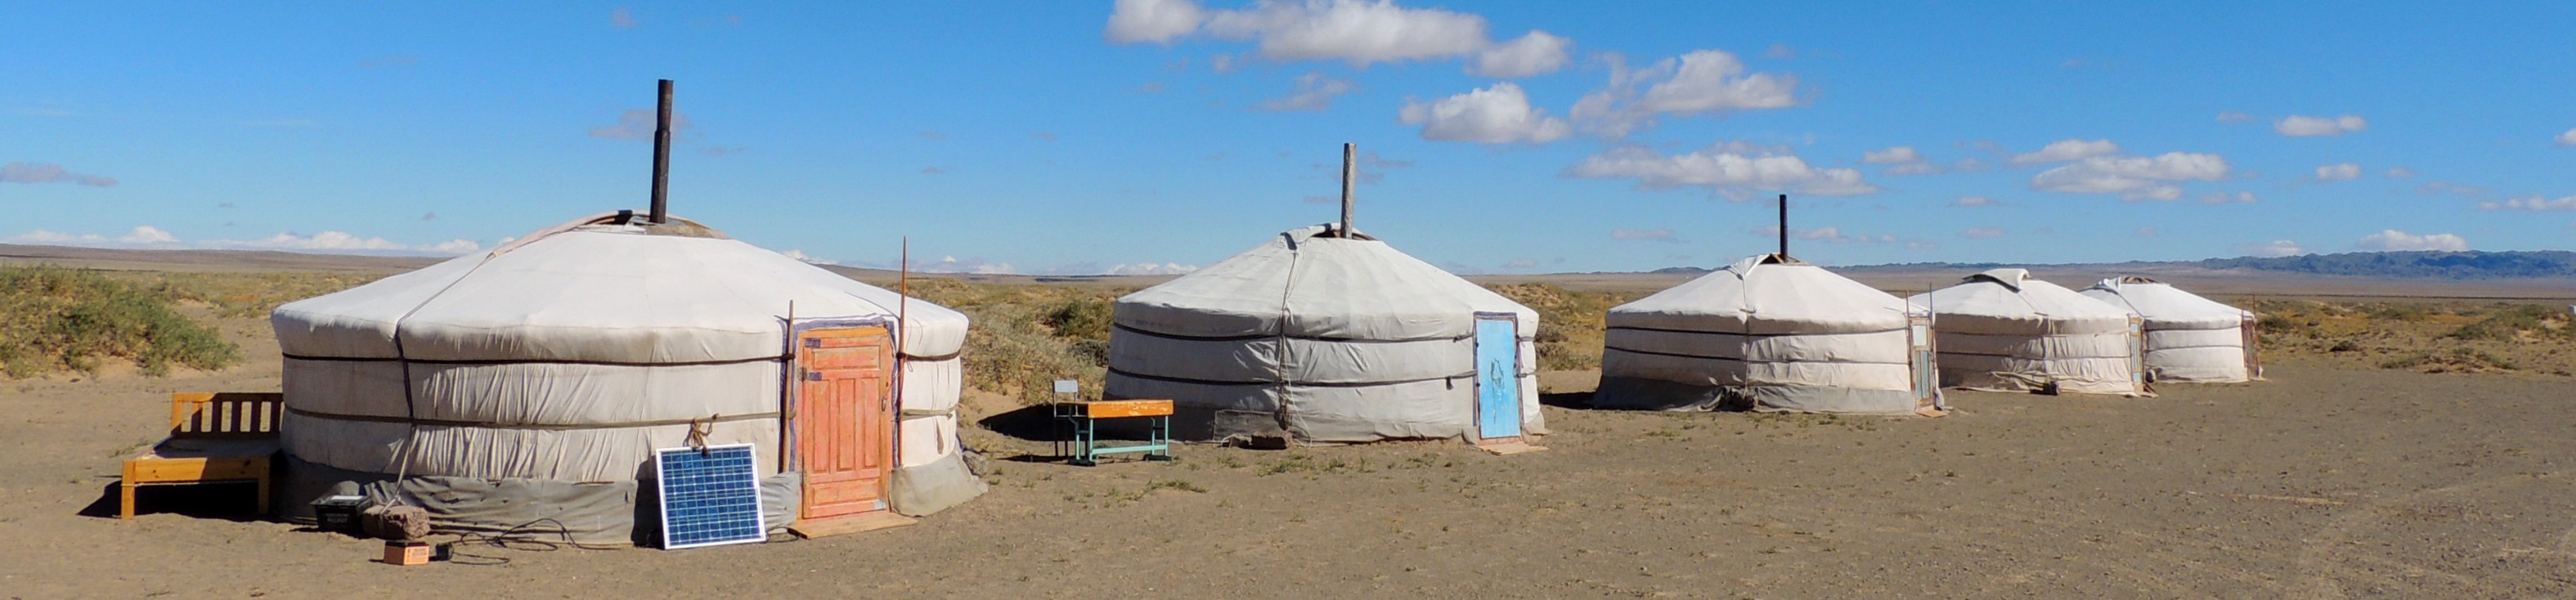 gery na pustynii Gobi